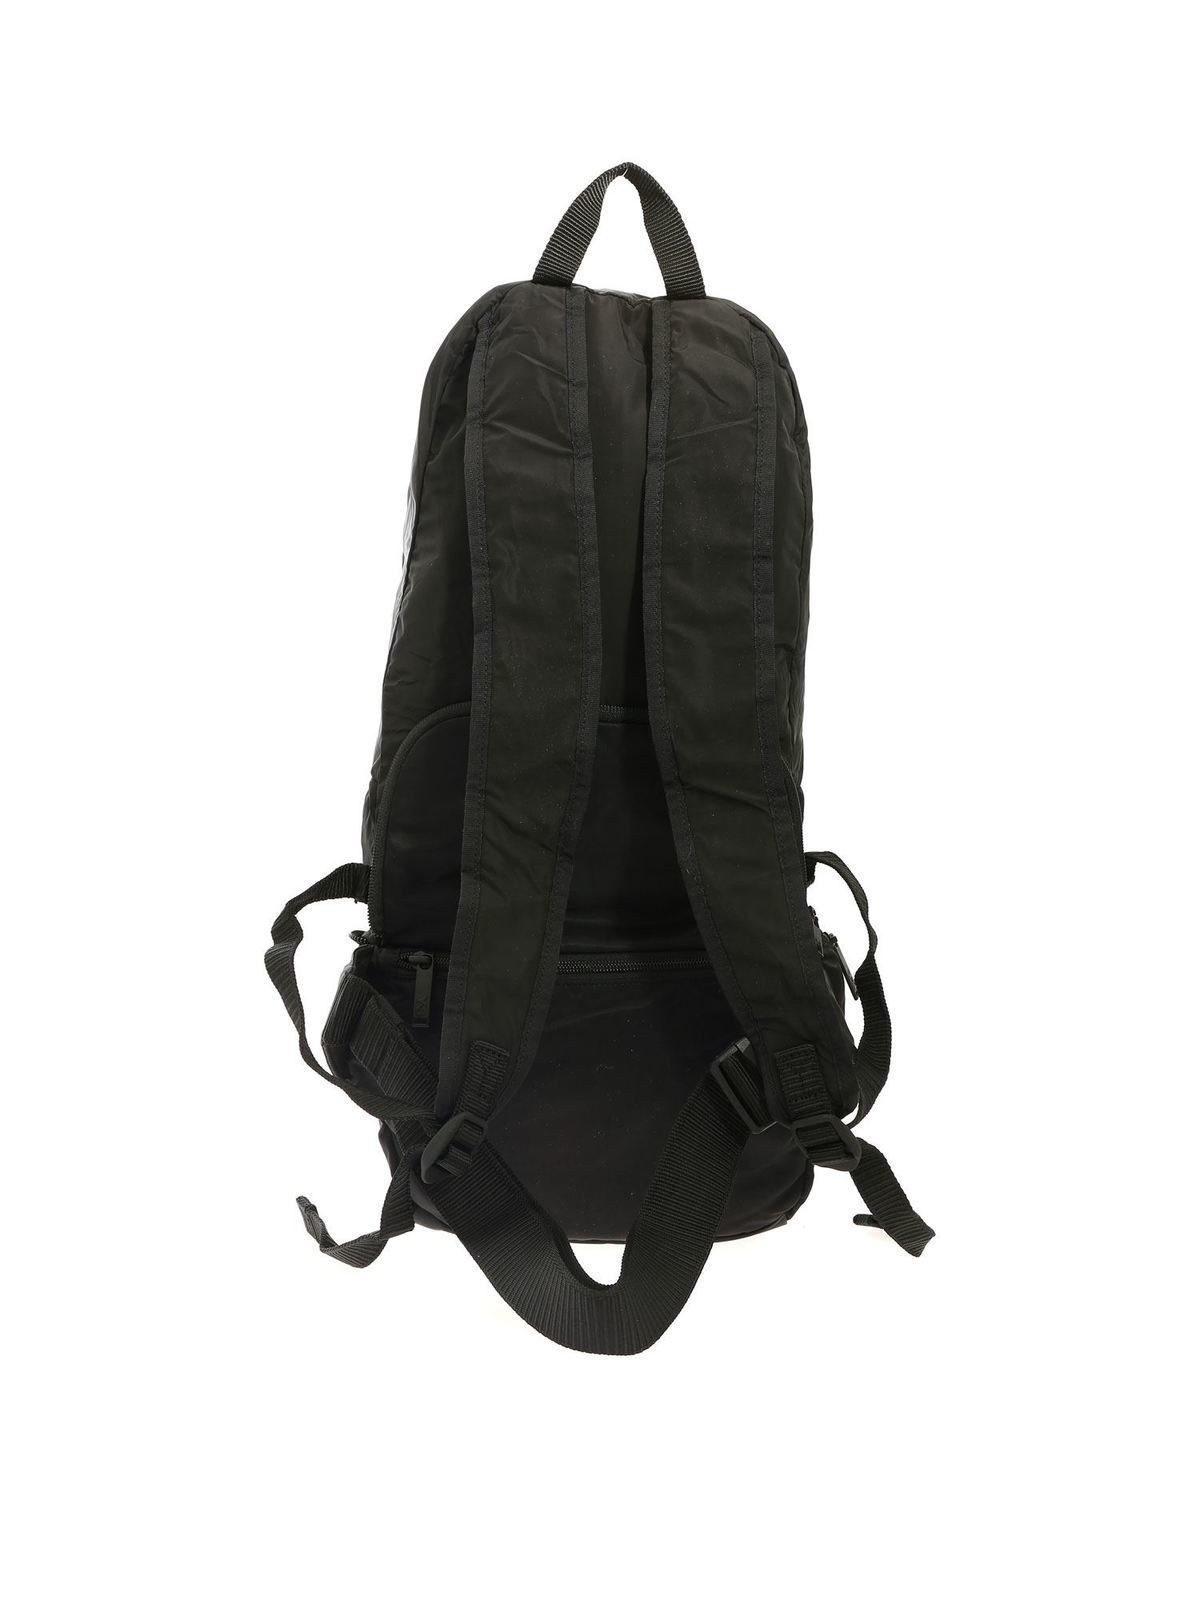 y3 backpack